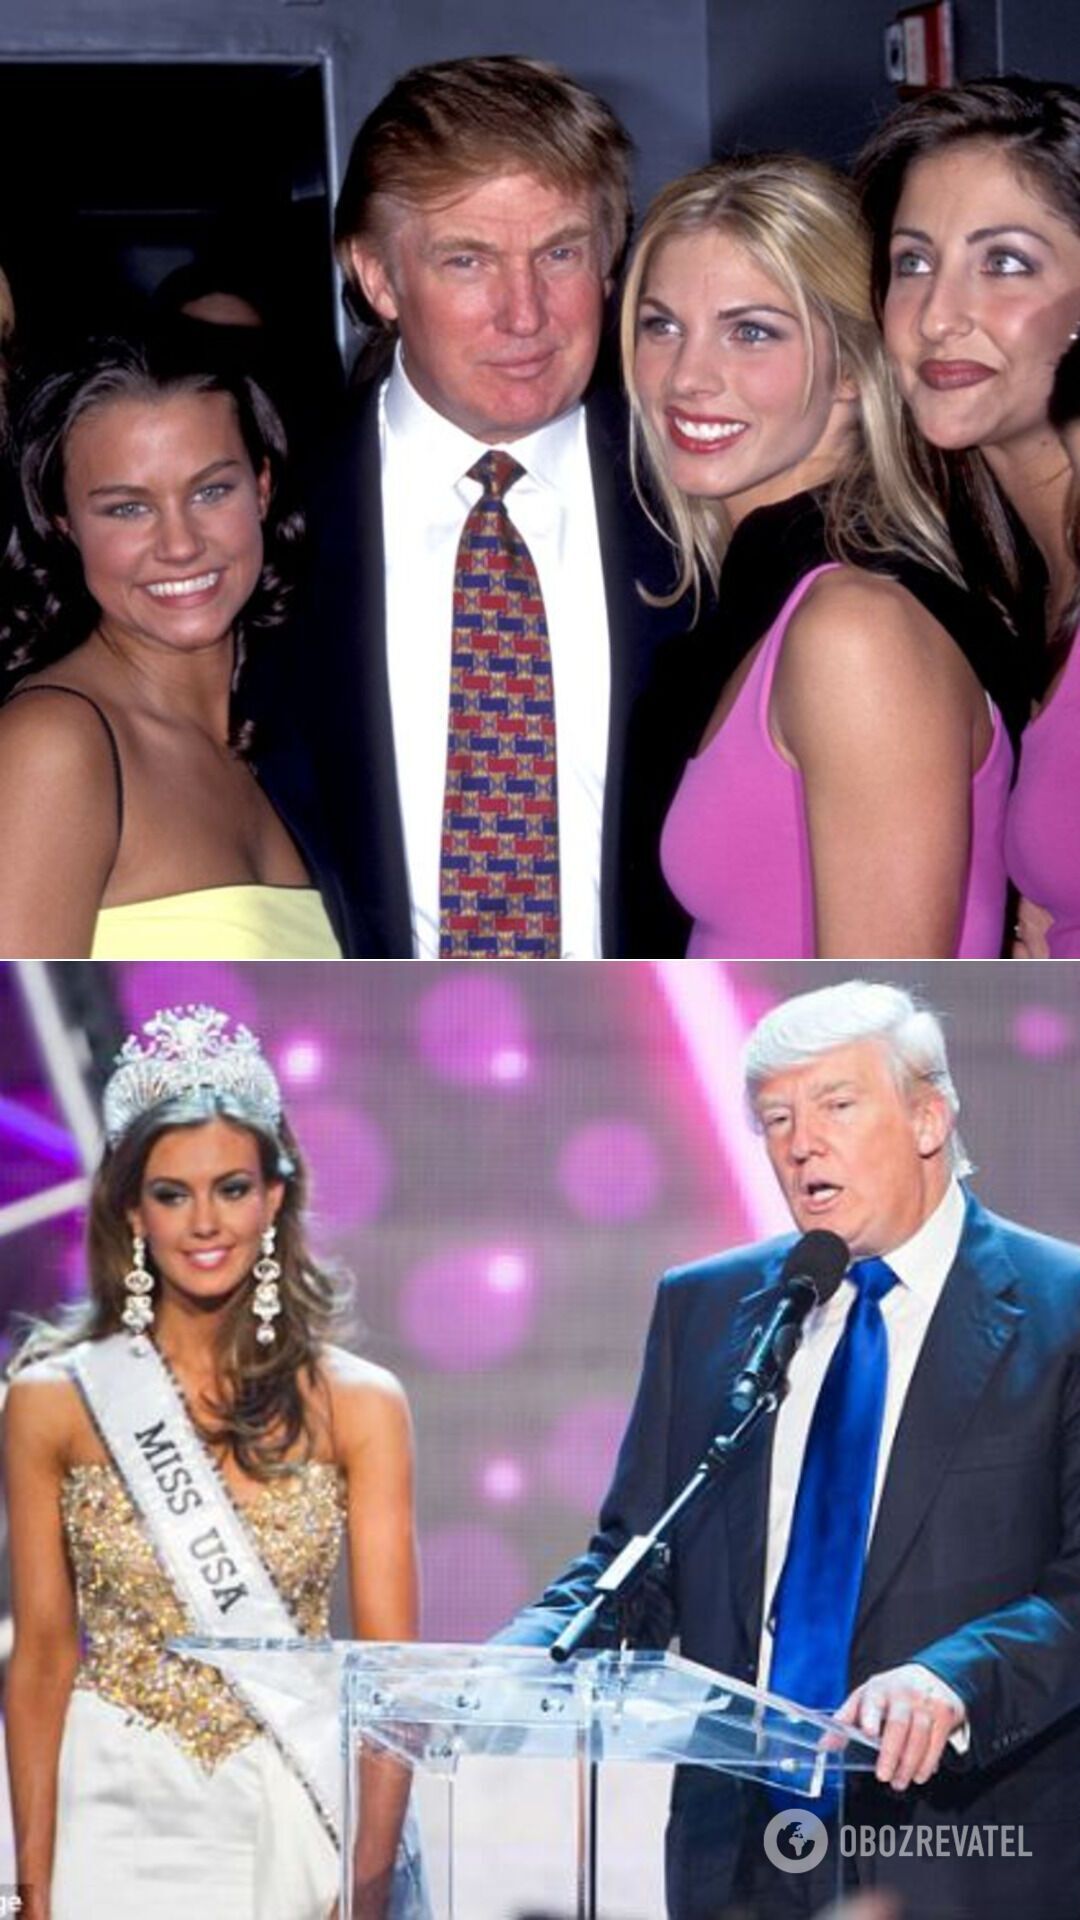 Трамп на пресконференції, присвяченій конкурсам краси "Міс США" і "Міс Тінейджер США" (січень 1999 року); Трамп і Міс Америка-2013